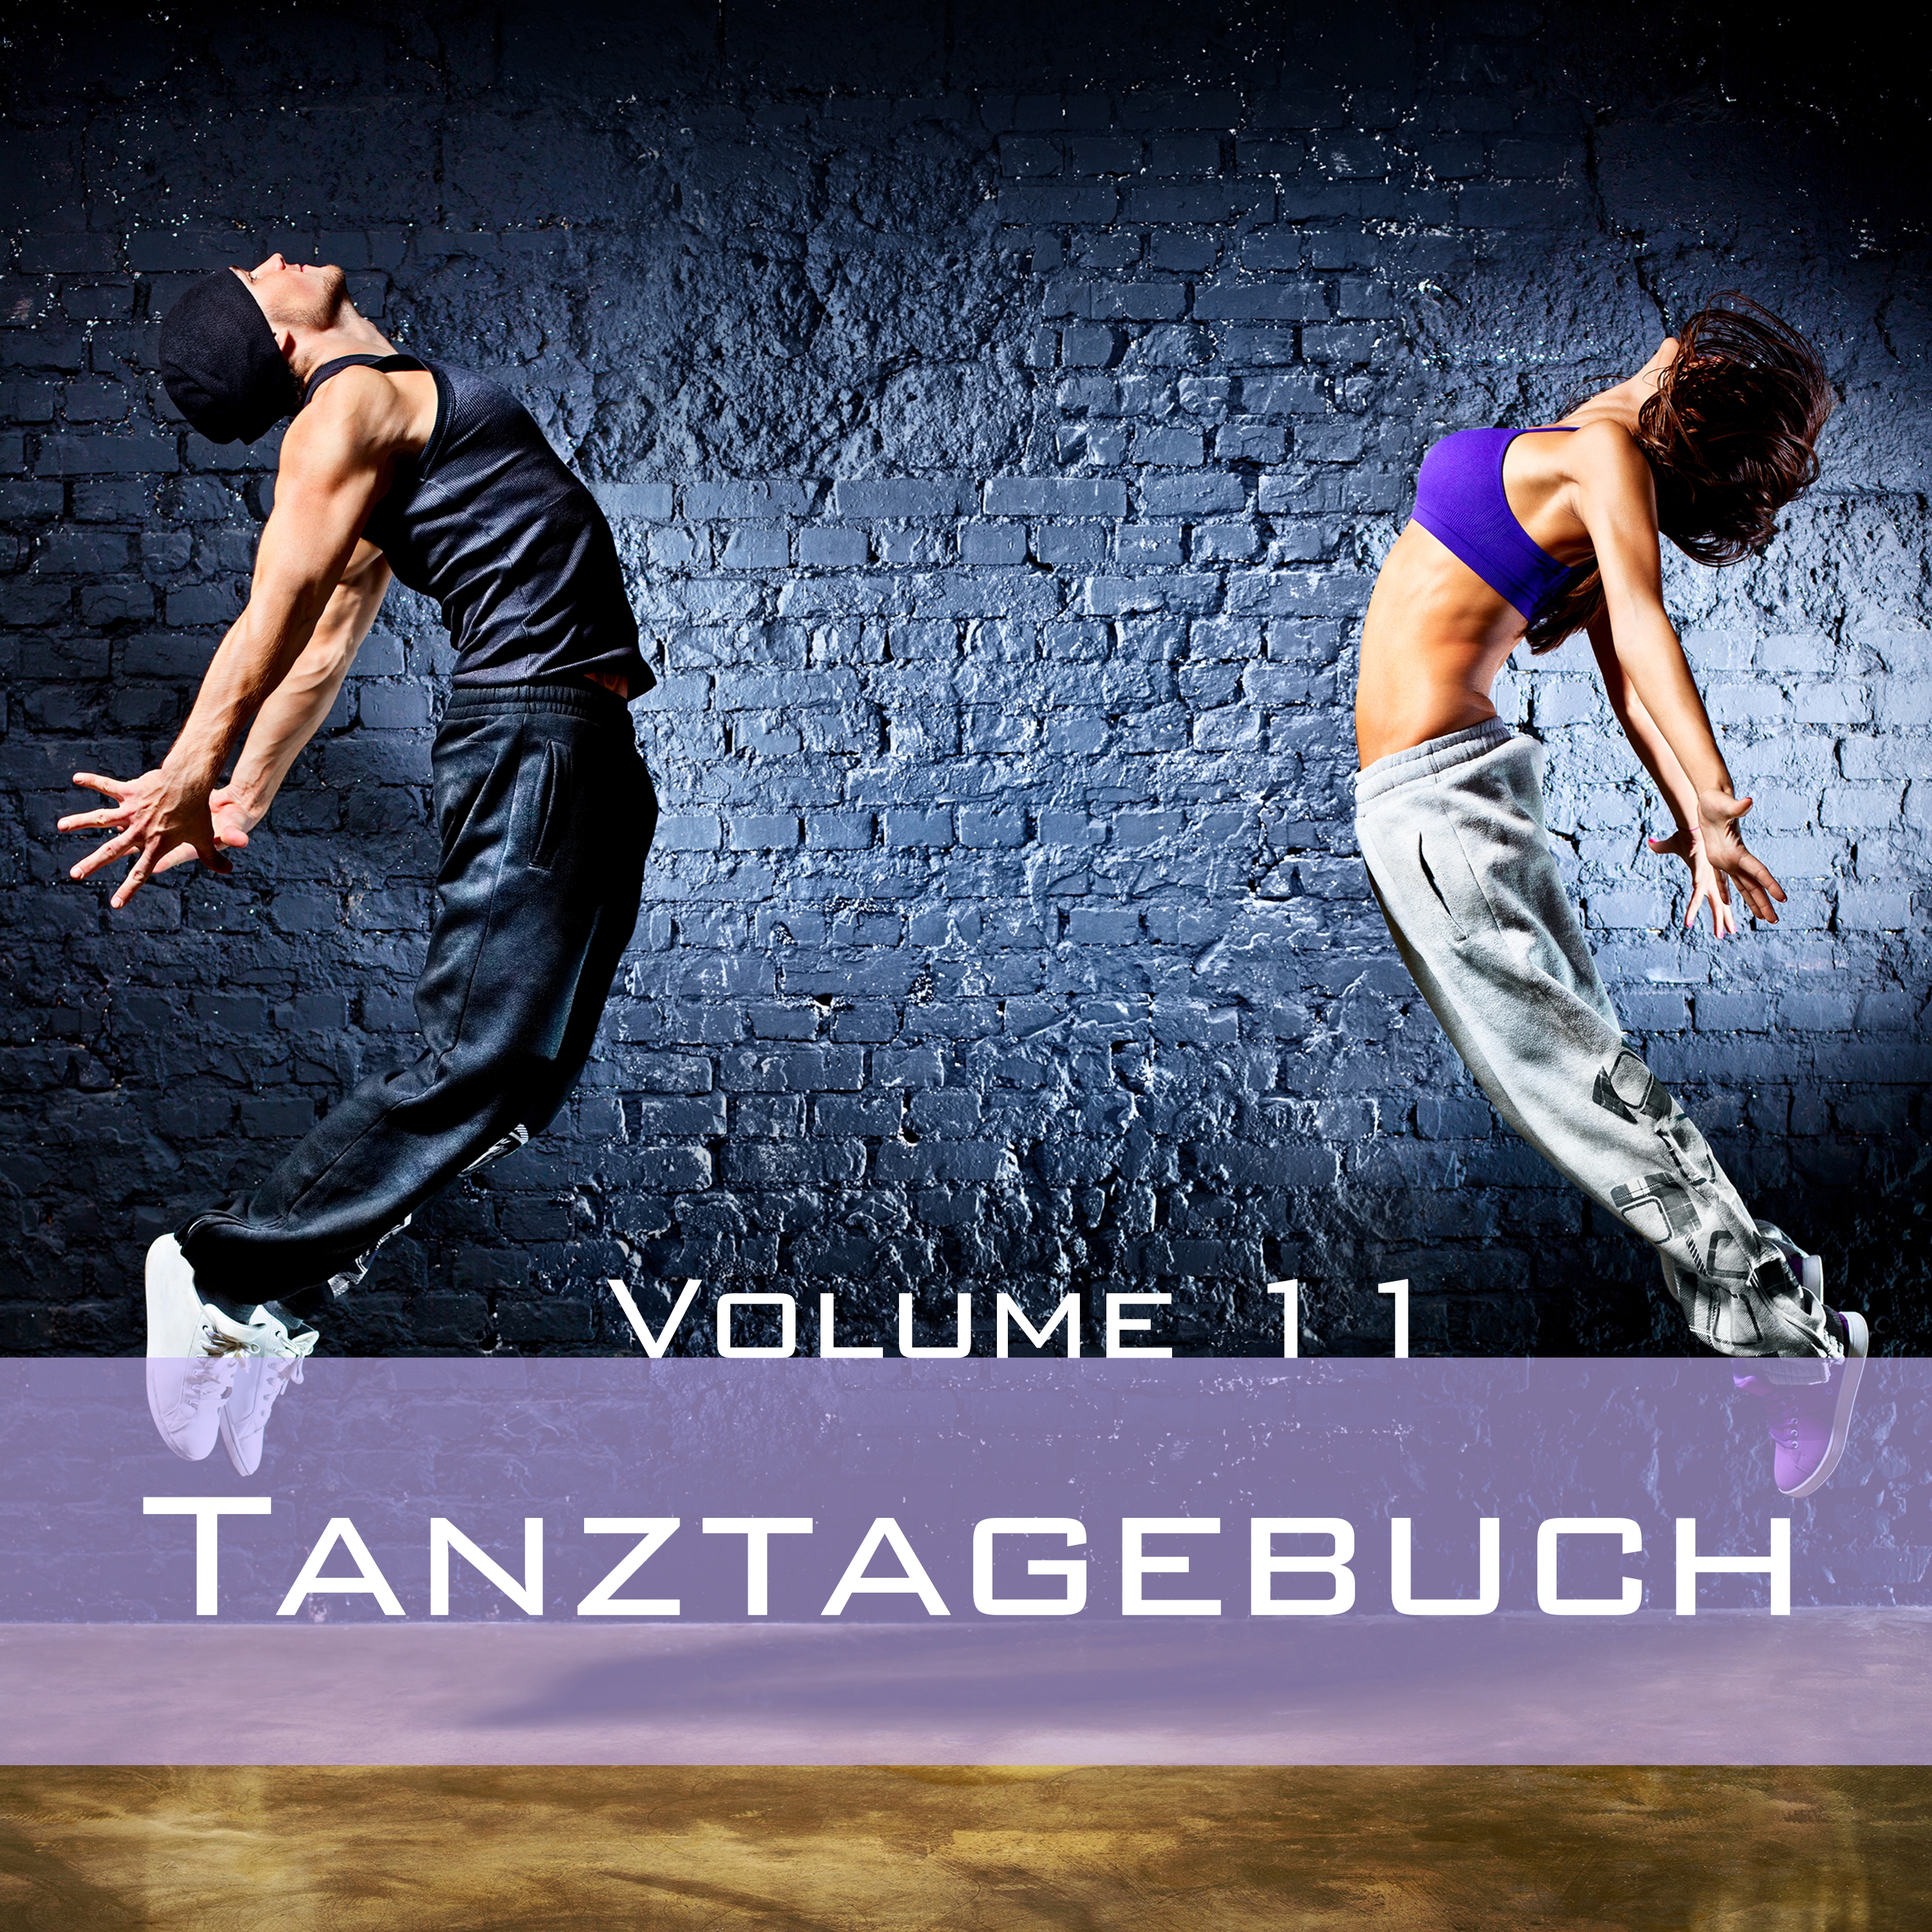 Tanztagebuch, Vol. 11